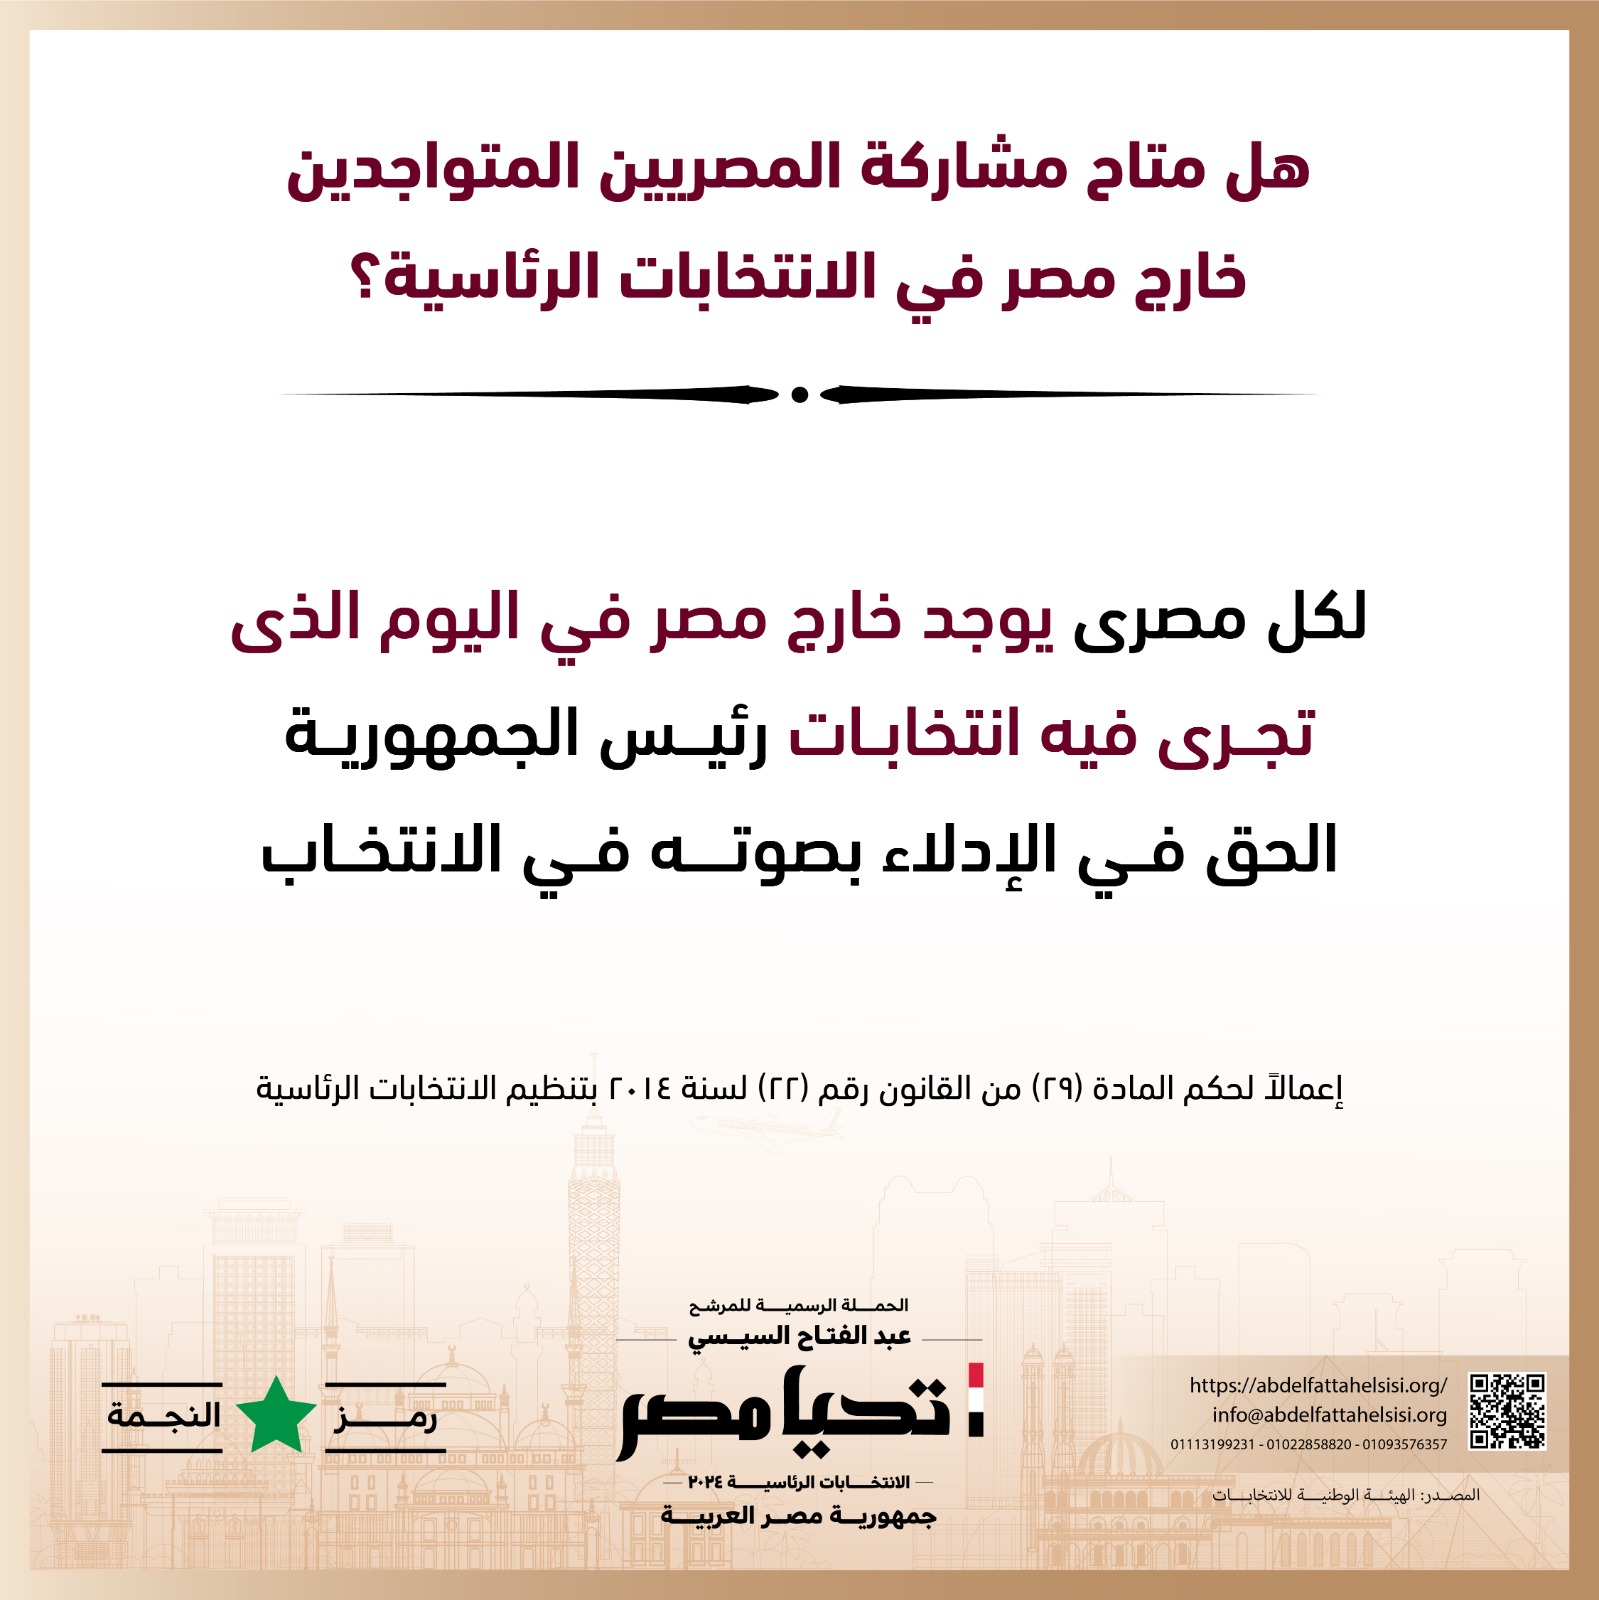 الحملة الرسمية للمرشح عبد الفتاح السيسي  (11)